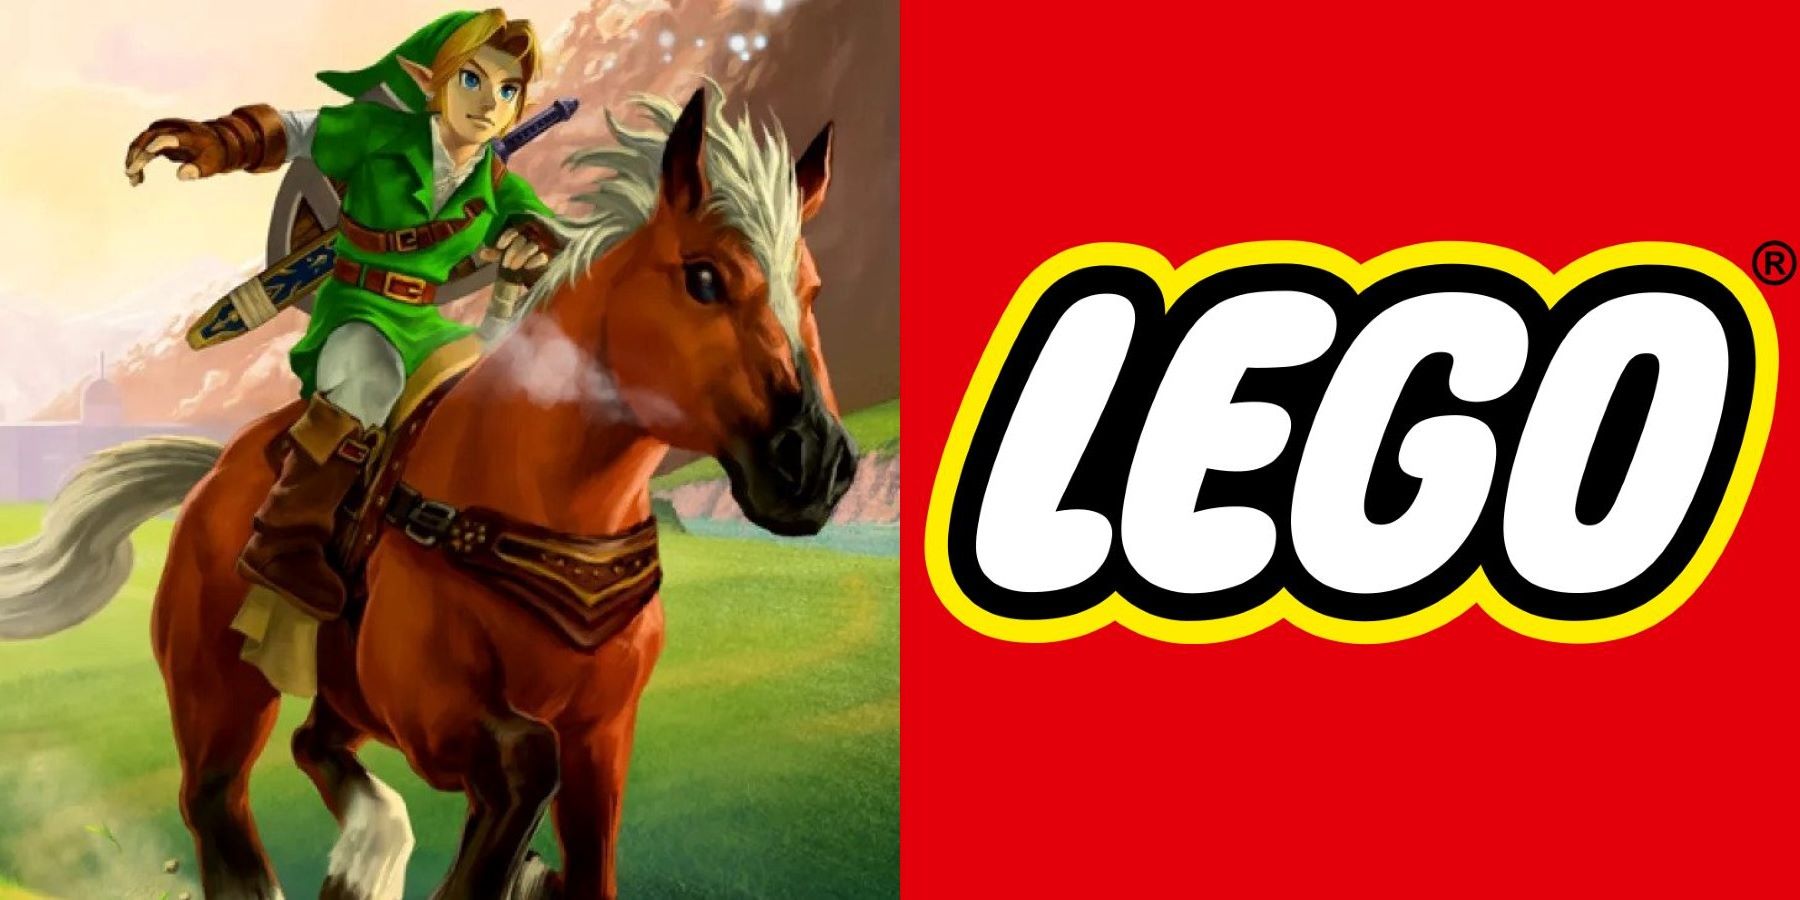 LoZ] Lego Zelda; Last update? :( : r/zelda